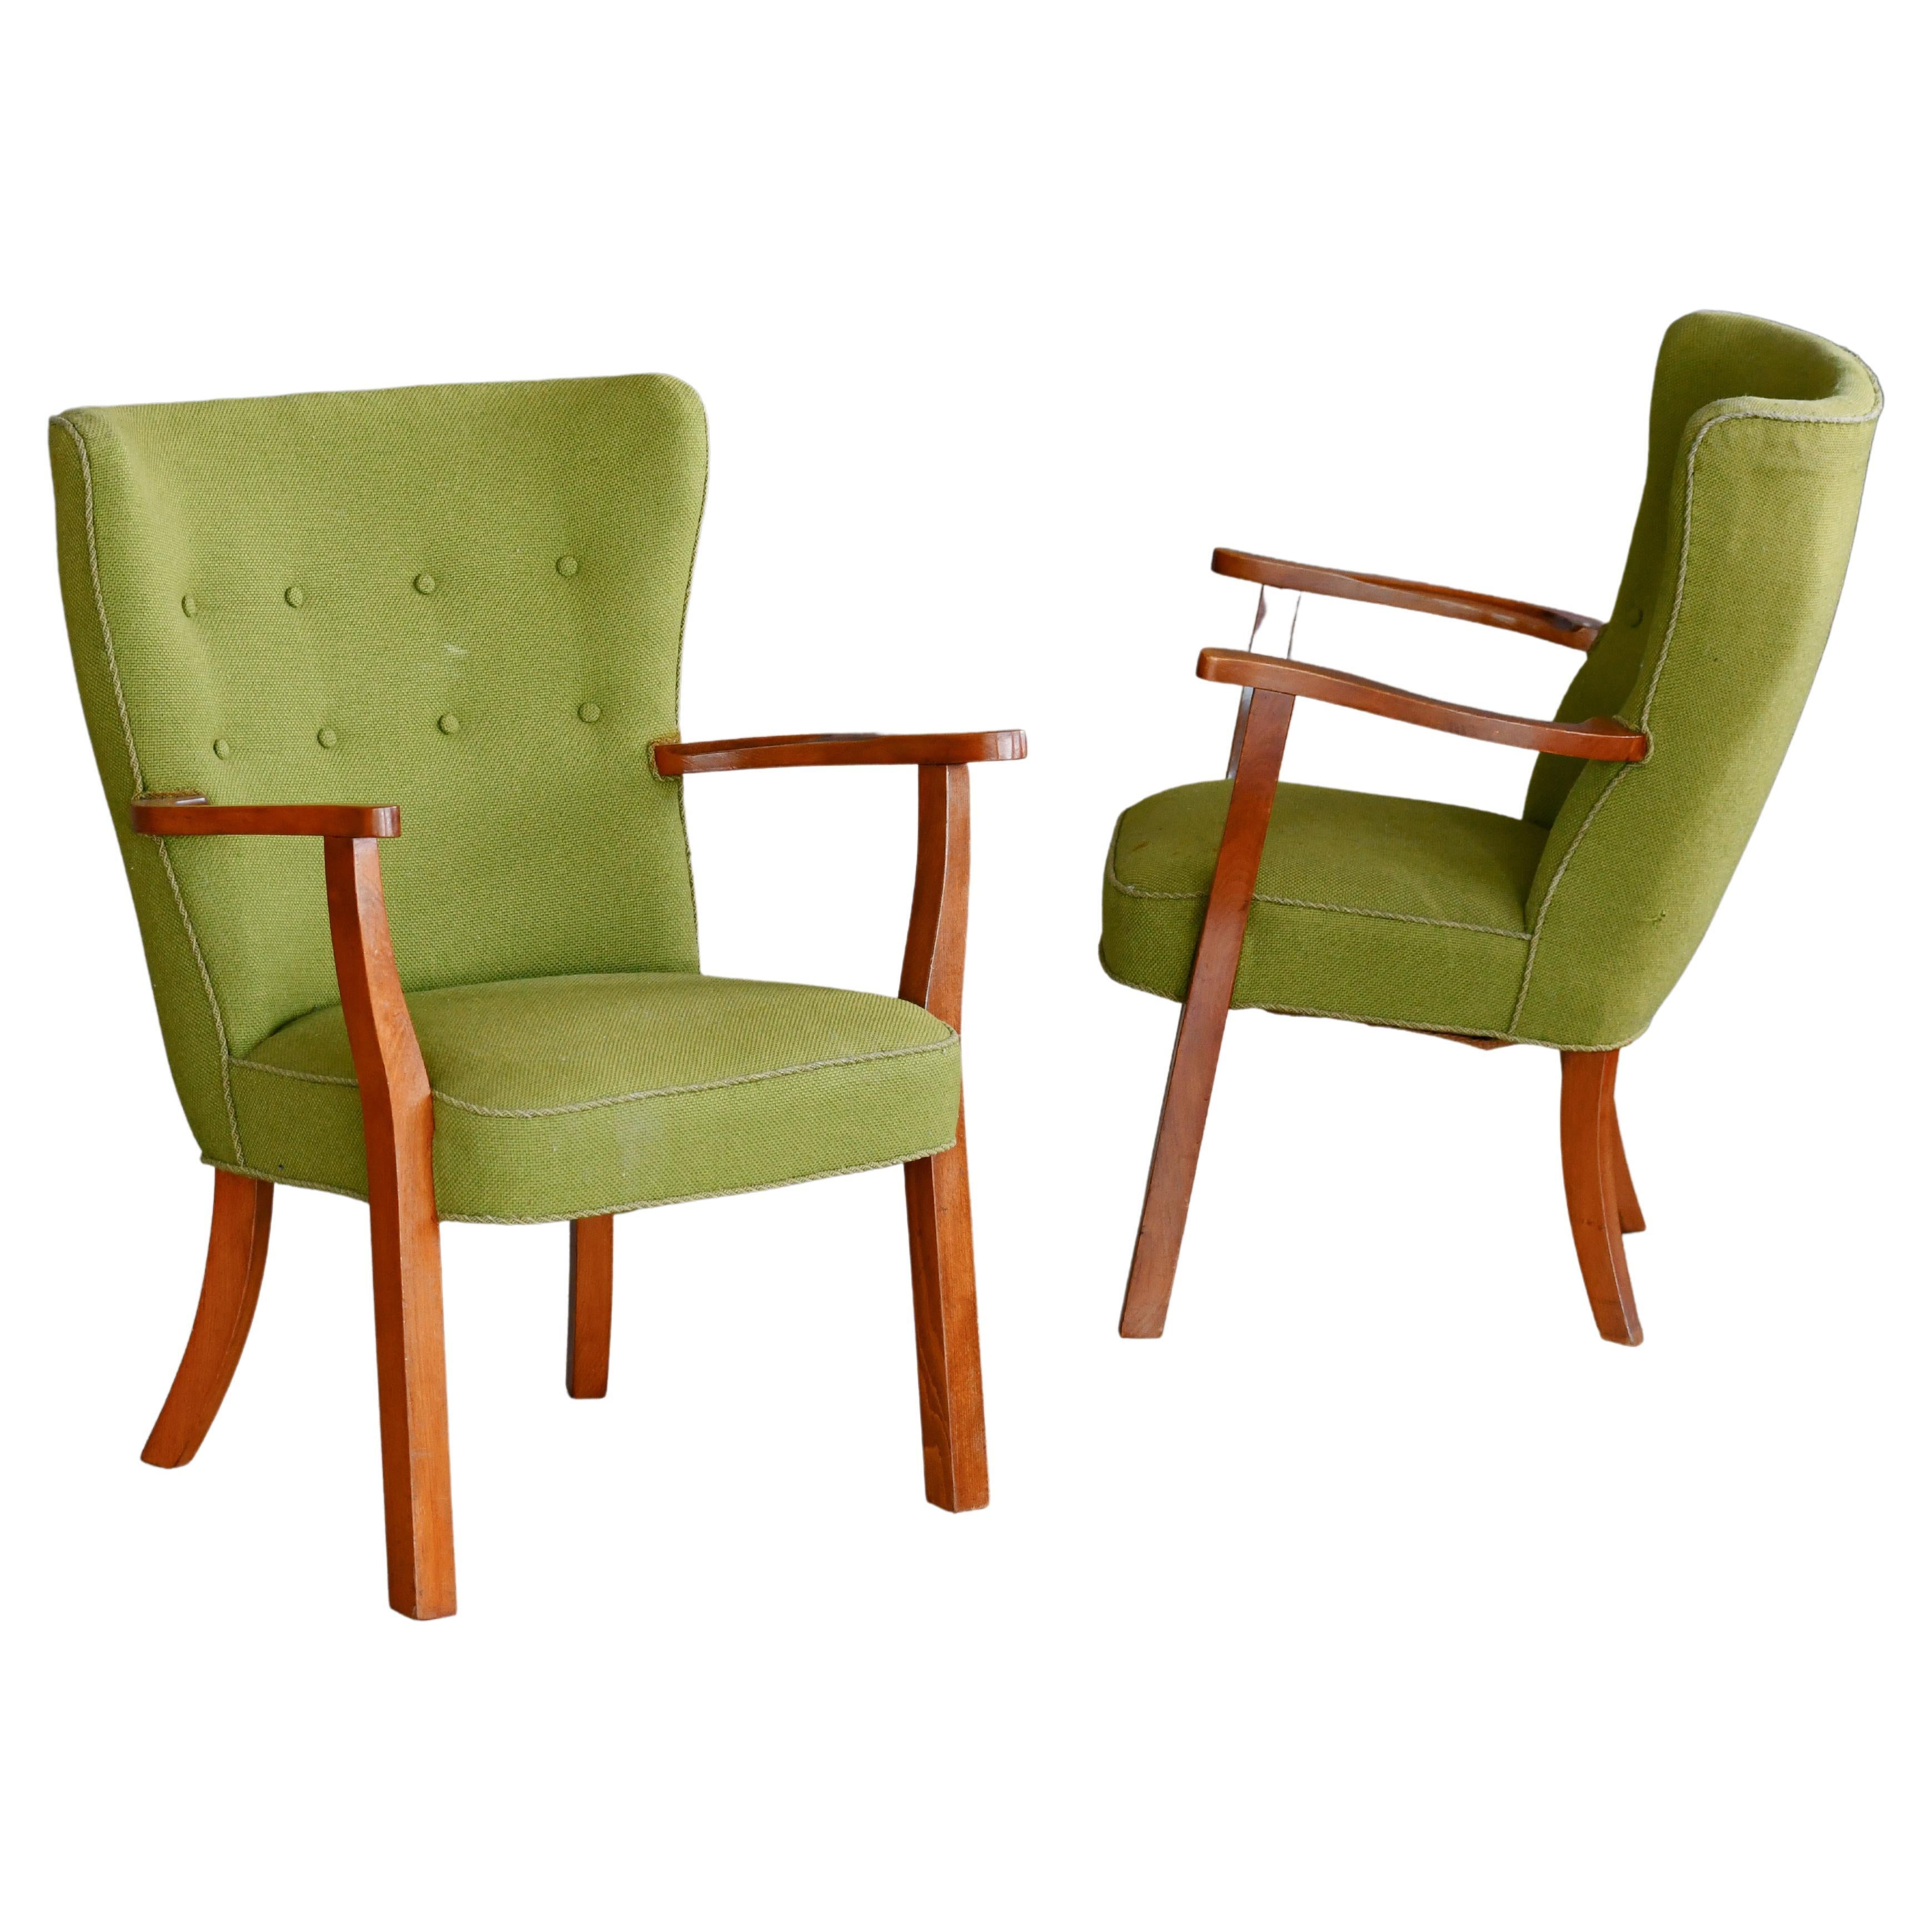 Ein Paar dänische Lounge- oder Sessel mit Teakholzbeinen und Armlehnen, 1950er Jahre.